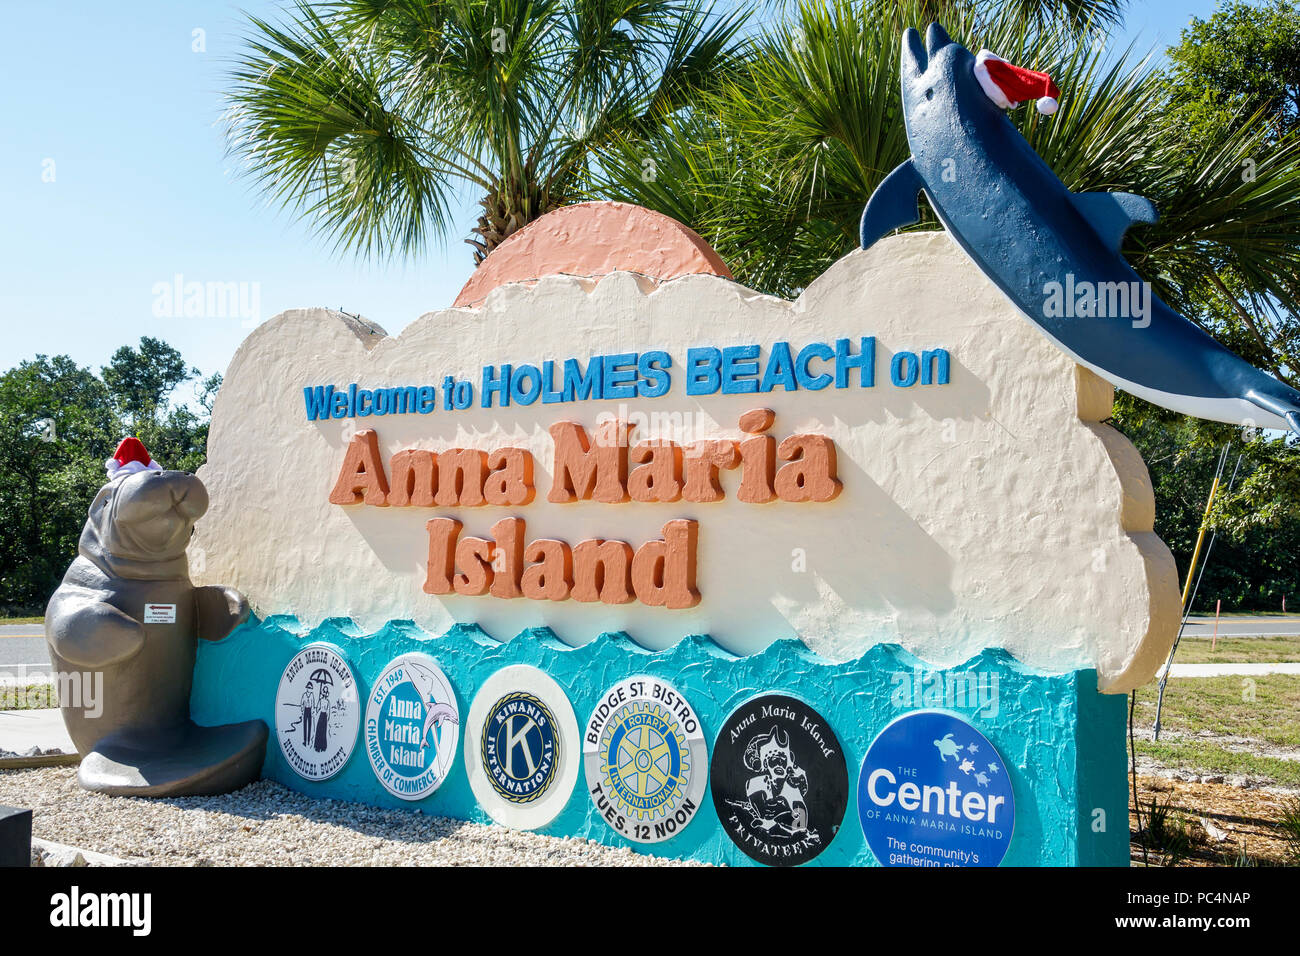 Florida,isola di Anna Maria,Spiaggia di Holmes,cartello di benvenuto,camera di commercio,Kiwanis,Rotary Club,decorazione di vacanza,cappello di Santa,scultura di lamantini,FL171212052 Foto Stock